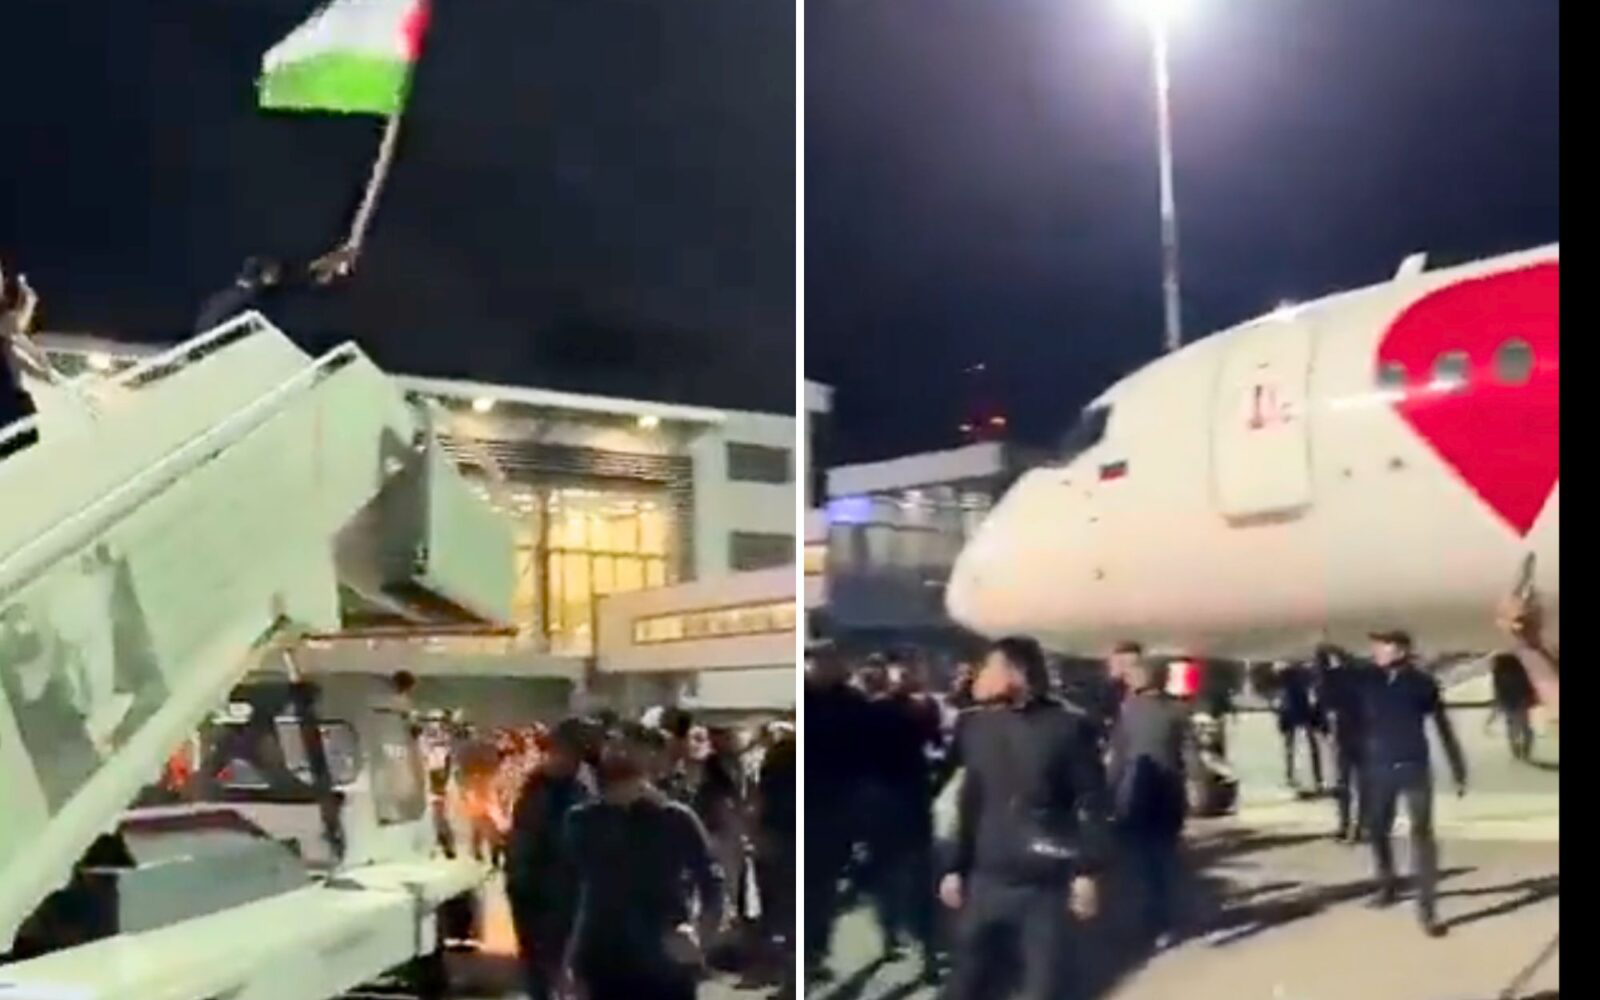 Dav na letišti byl vybaven palestinskými vlajkami a křičel muslimská hesla